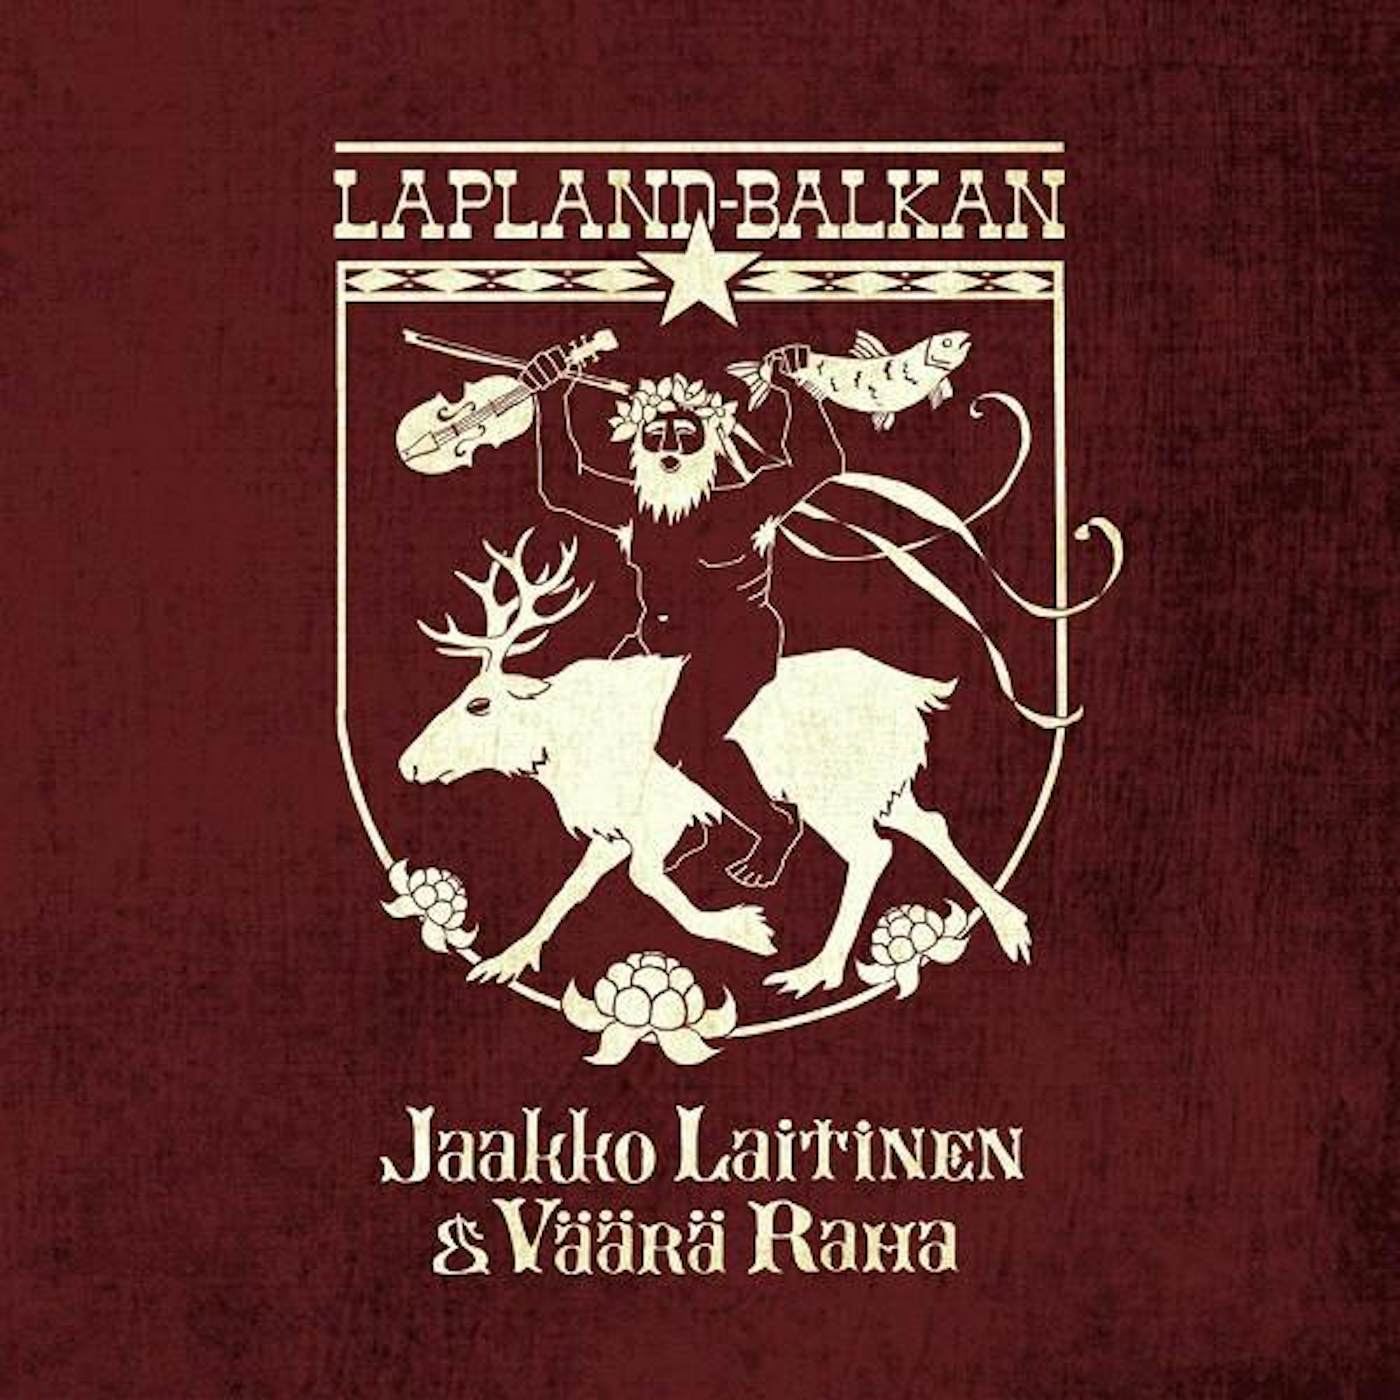 Jaakko Laitinen & Väärä Raha Lapland-Balkan Vinyl Record